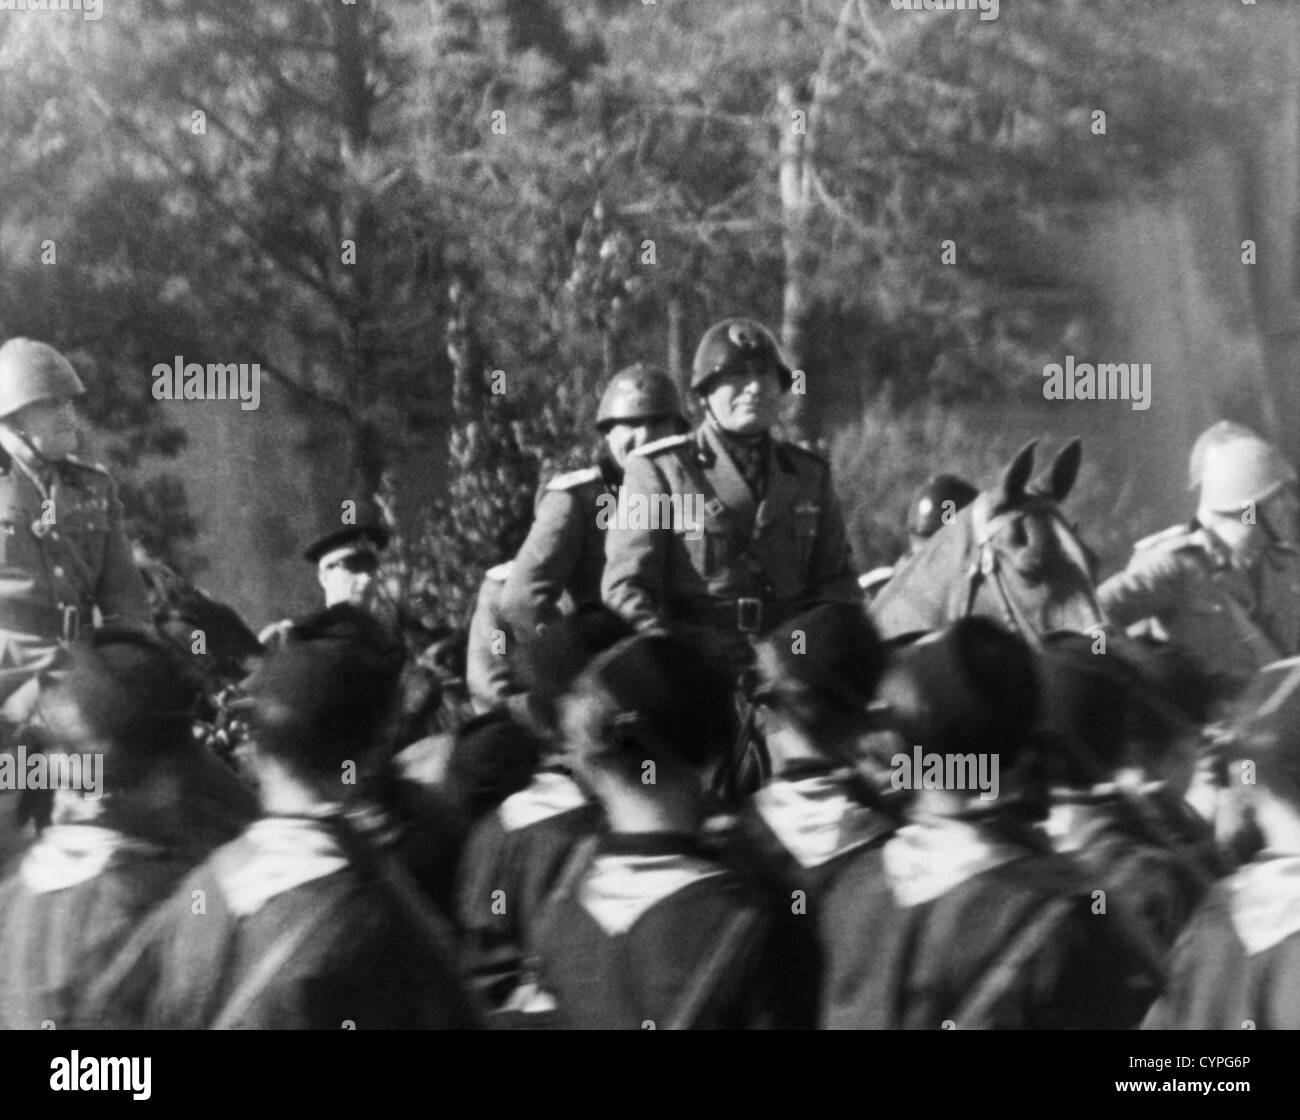 Benito Mussolini on Horseback, Circa 1935 Stock Photo